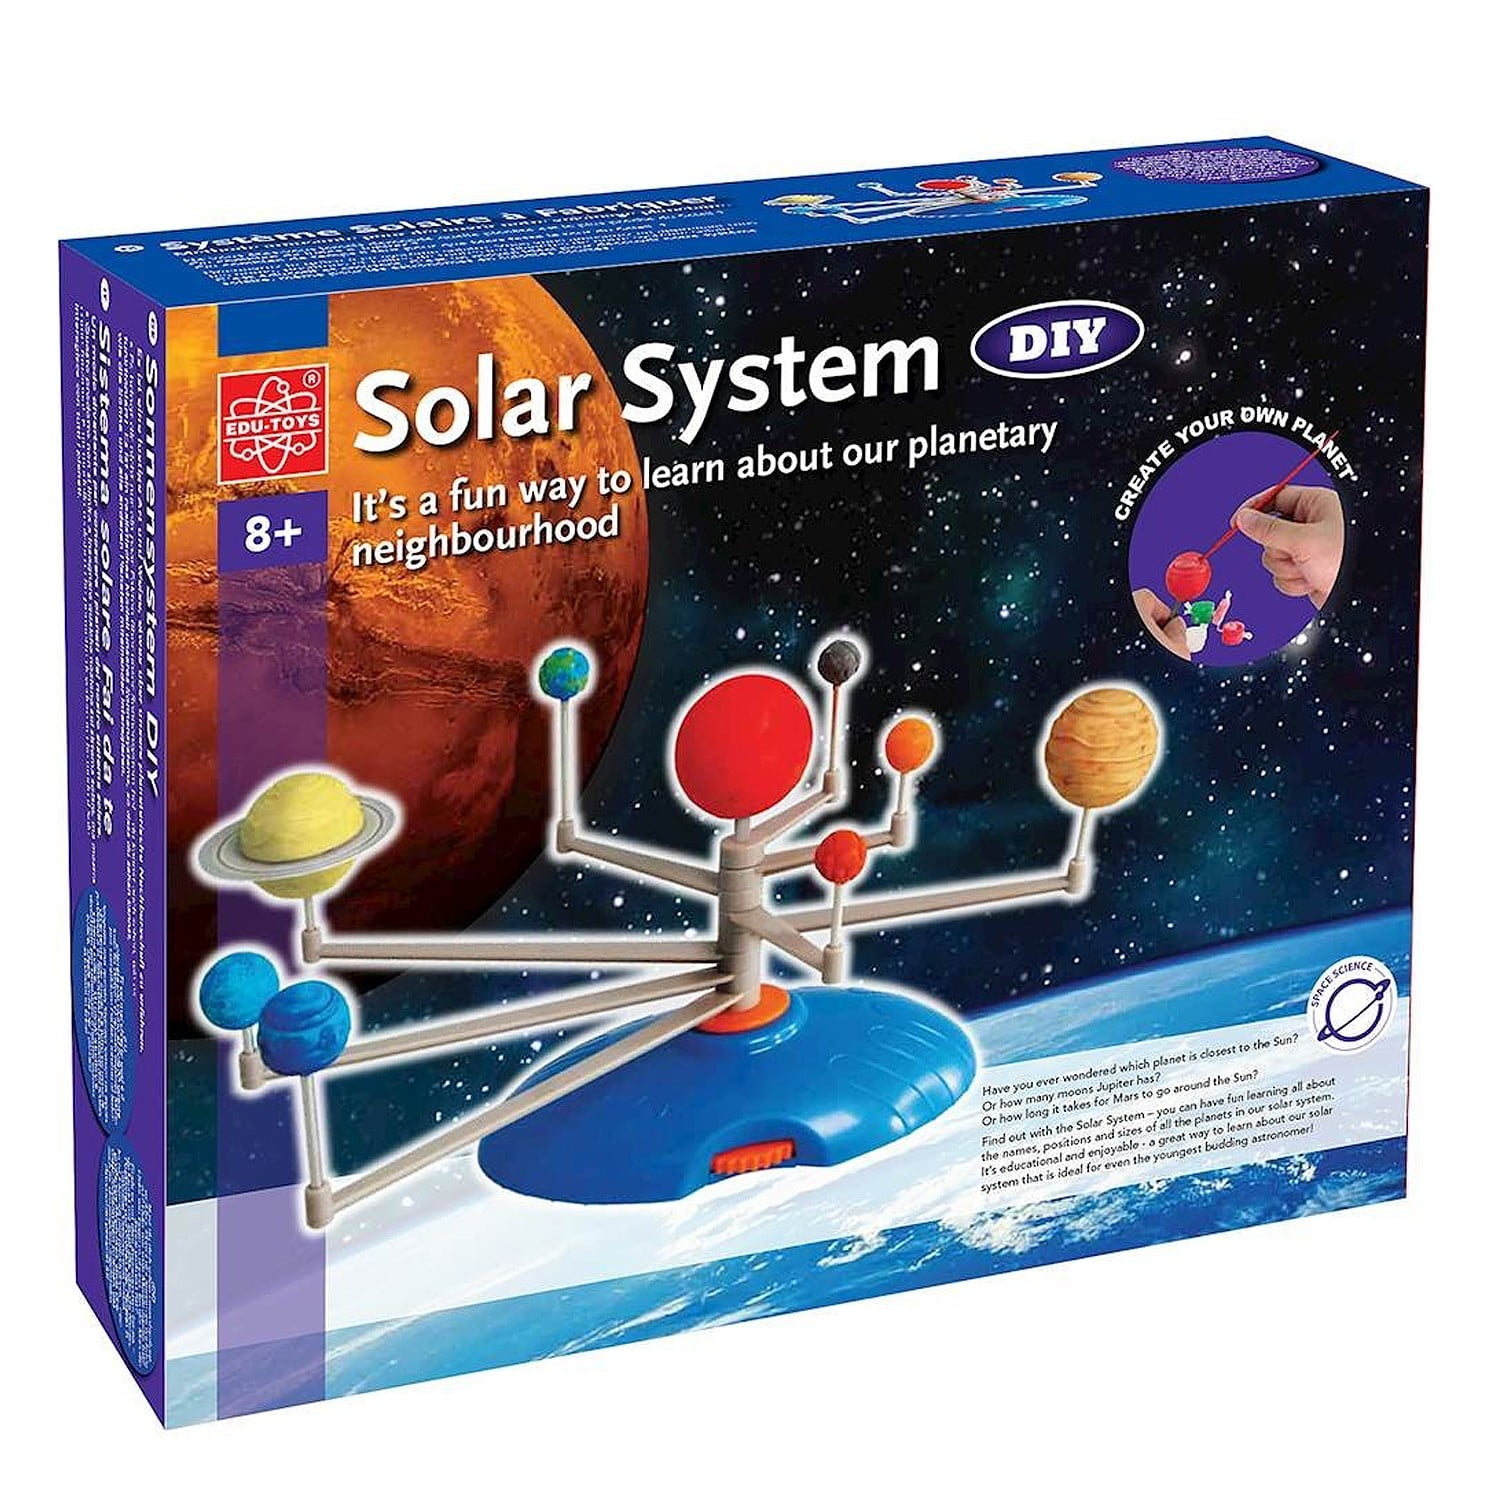  NNINNOEDU DIY Solar System Learning Kit for Kids,Solar